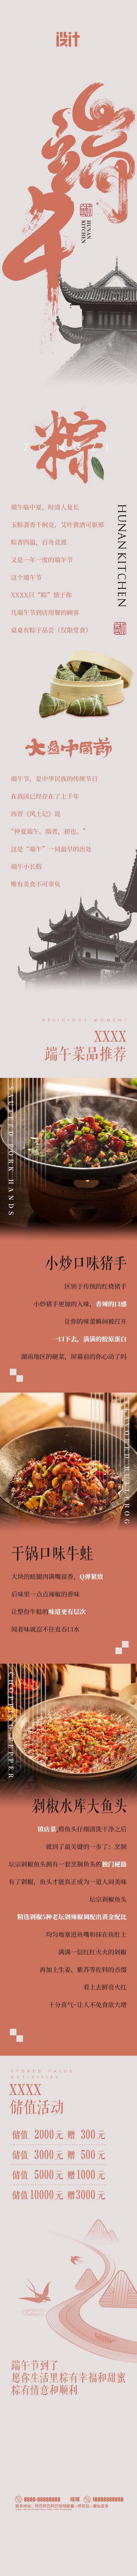 南门网 专题设计 餐饮 中国传统节日 端午节 美食 长图 粽子 菜品